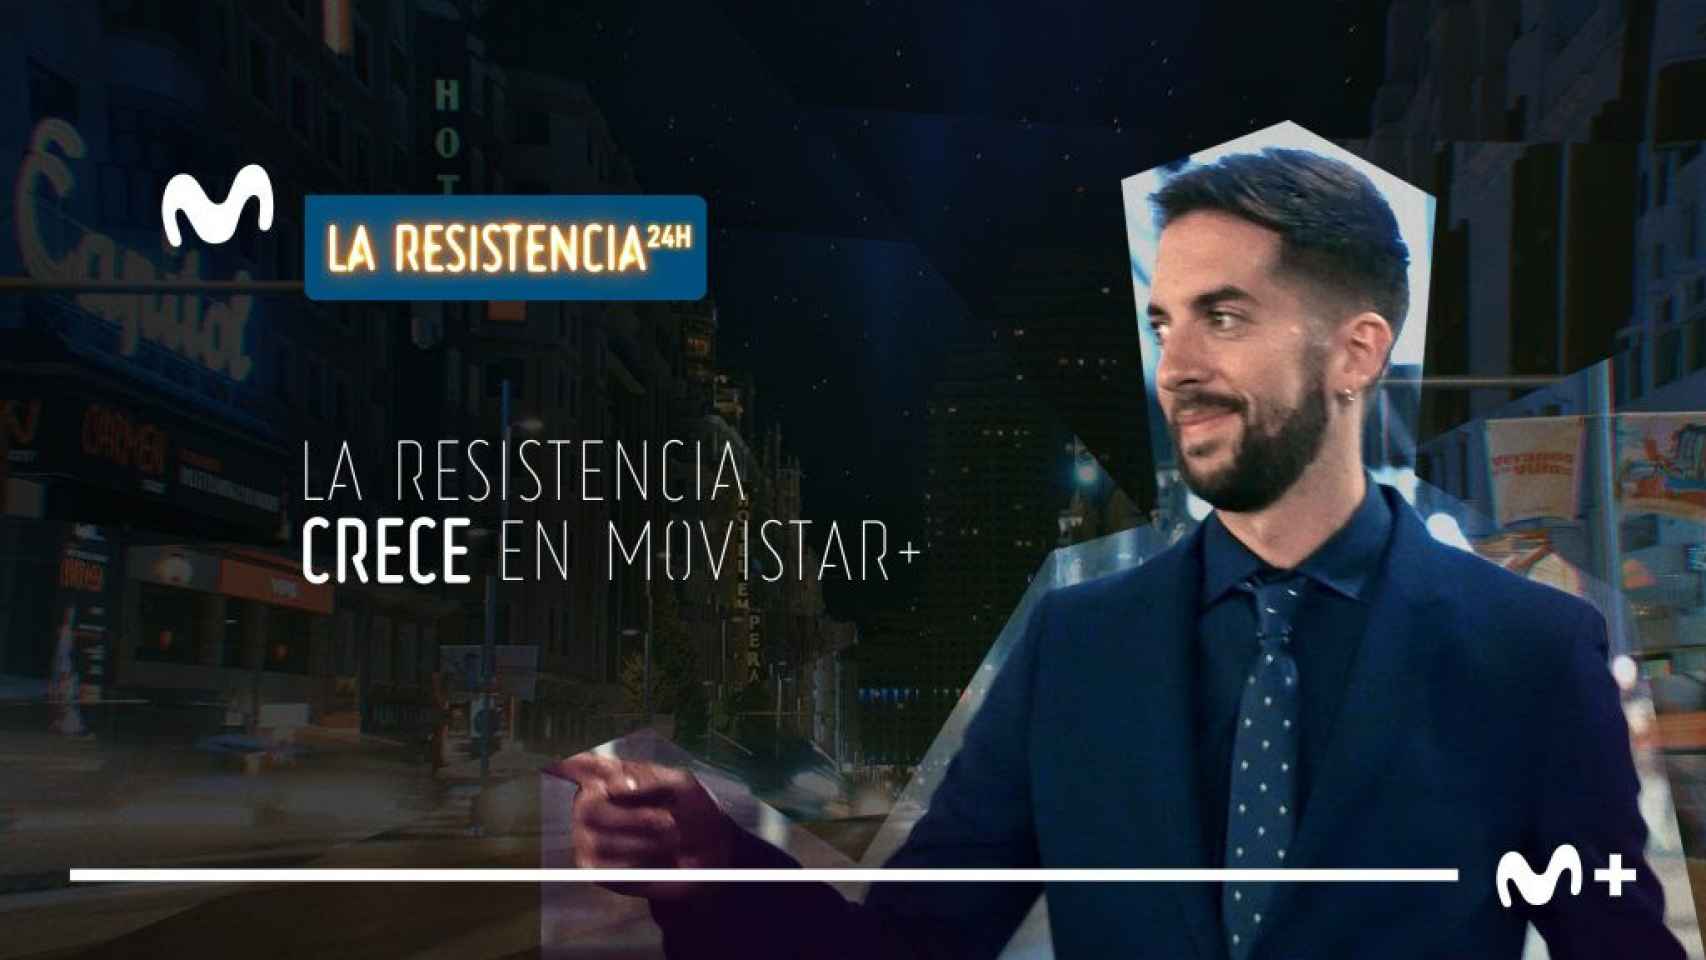 'La resistencia' reduce su presencia en YouTube para apostar por un canal 24 horas en Movistar